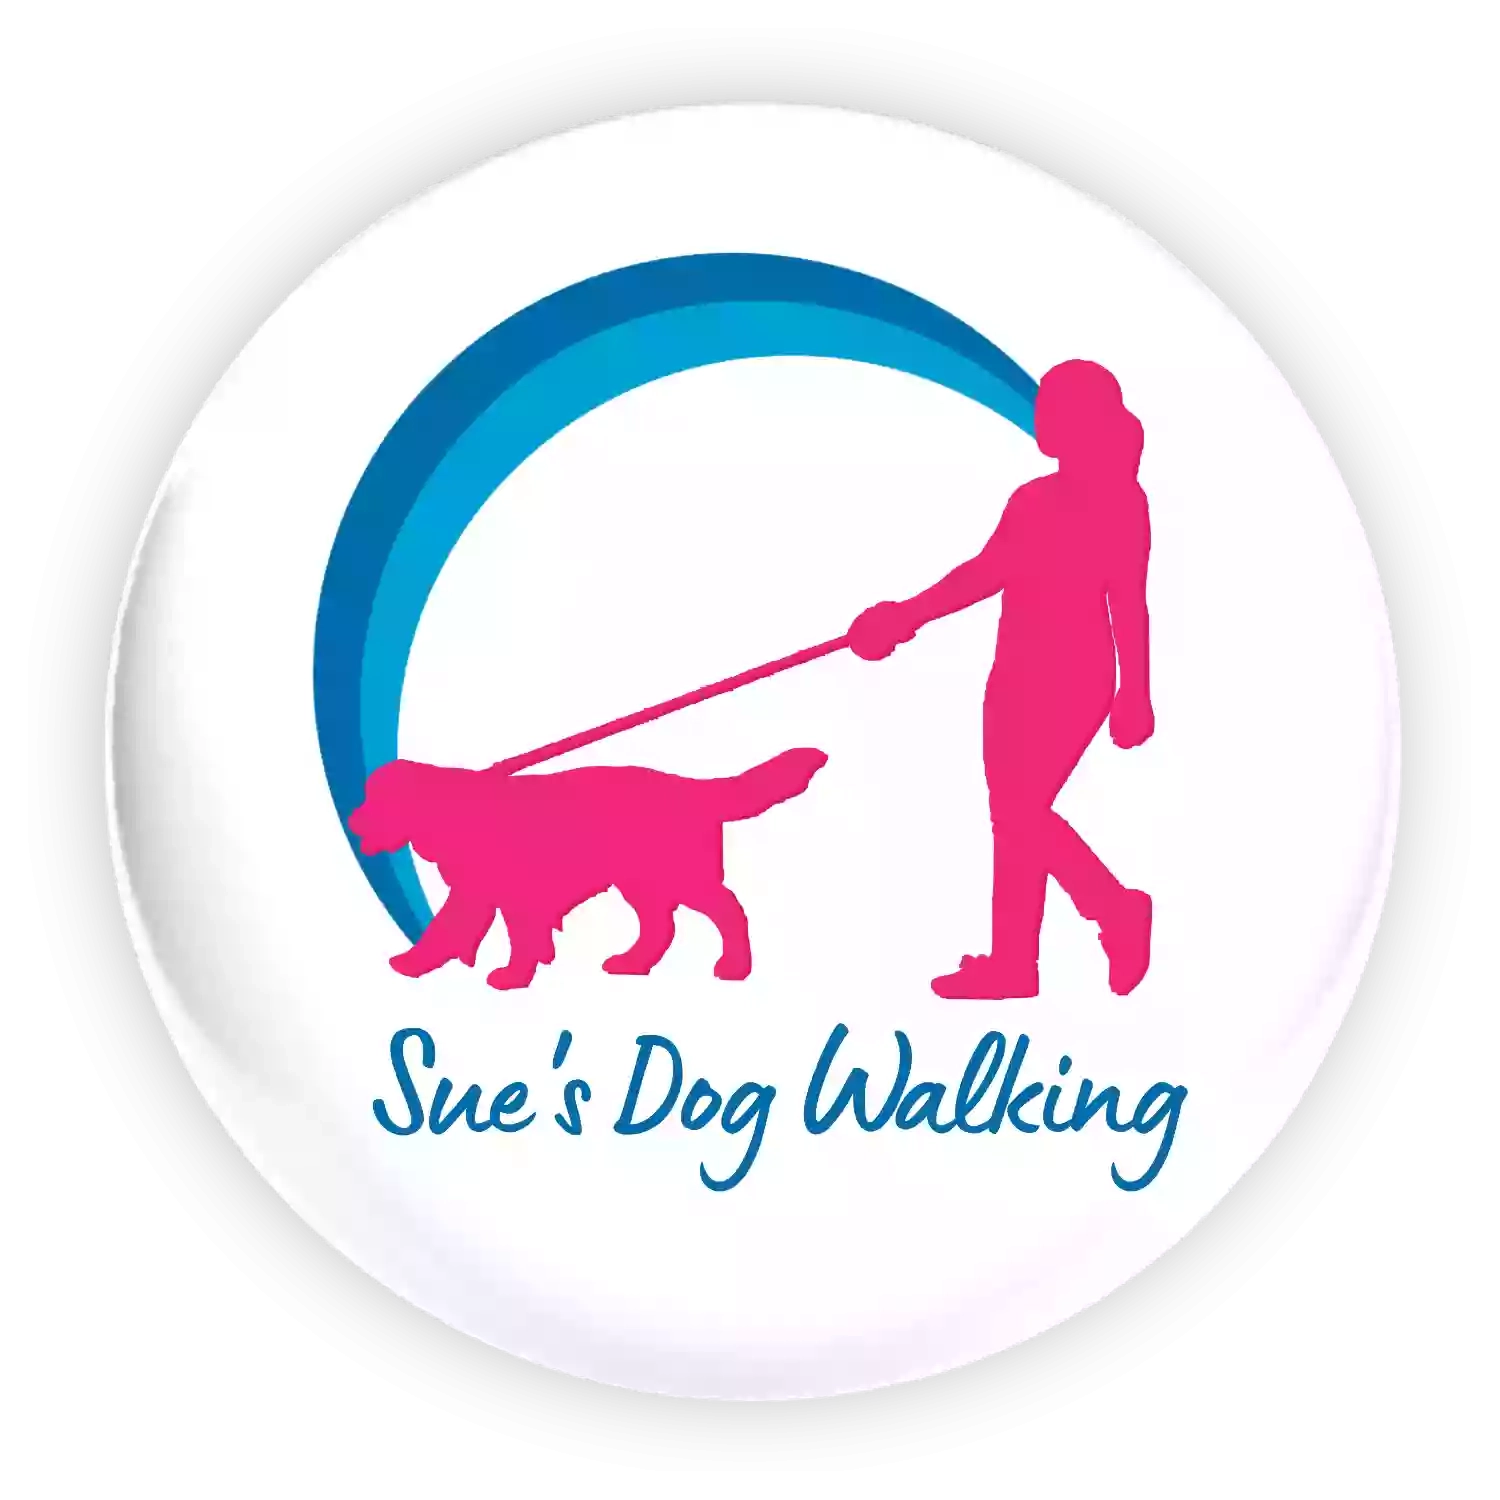 Sue's Dog Walking - Tamworth & Swadlingcote